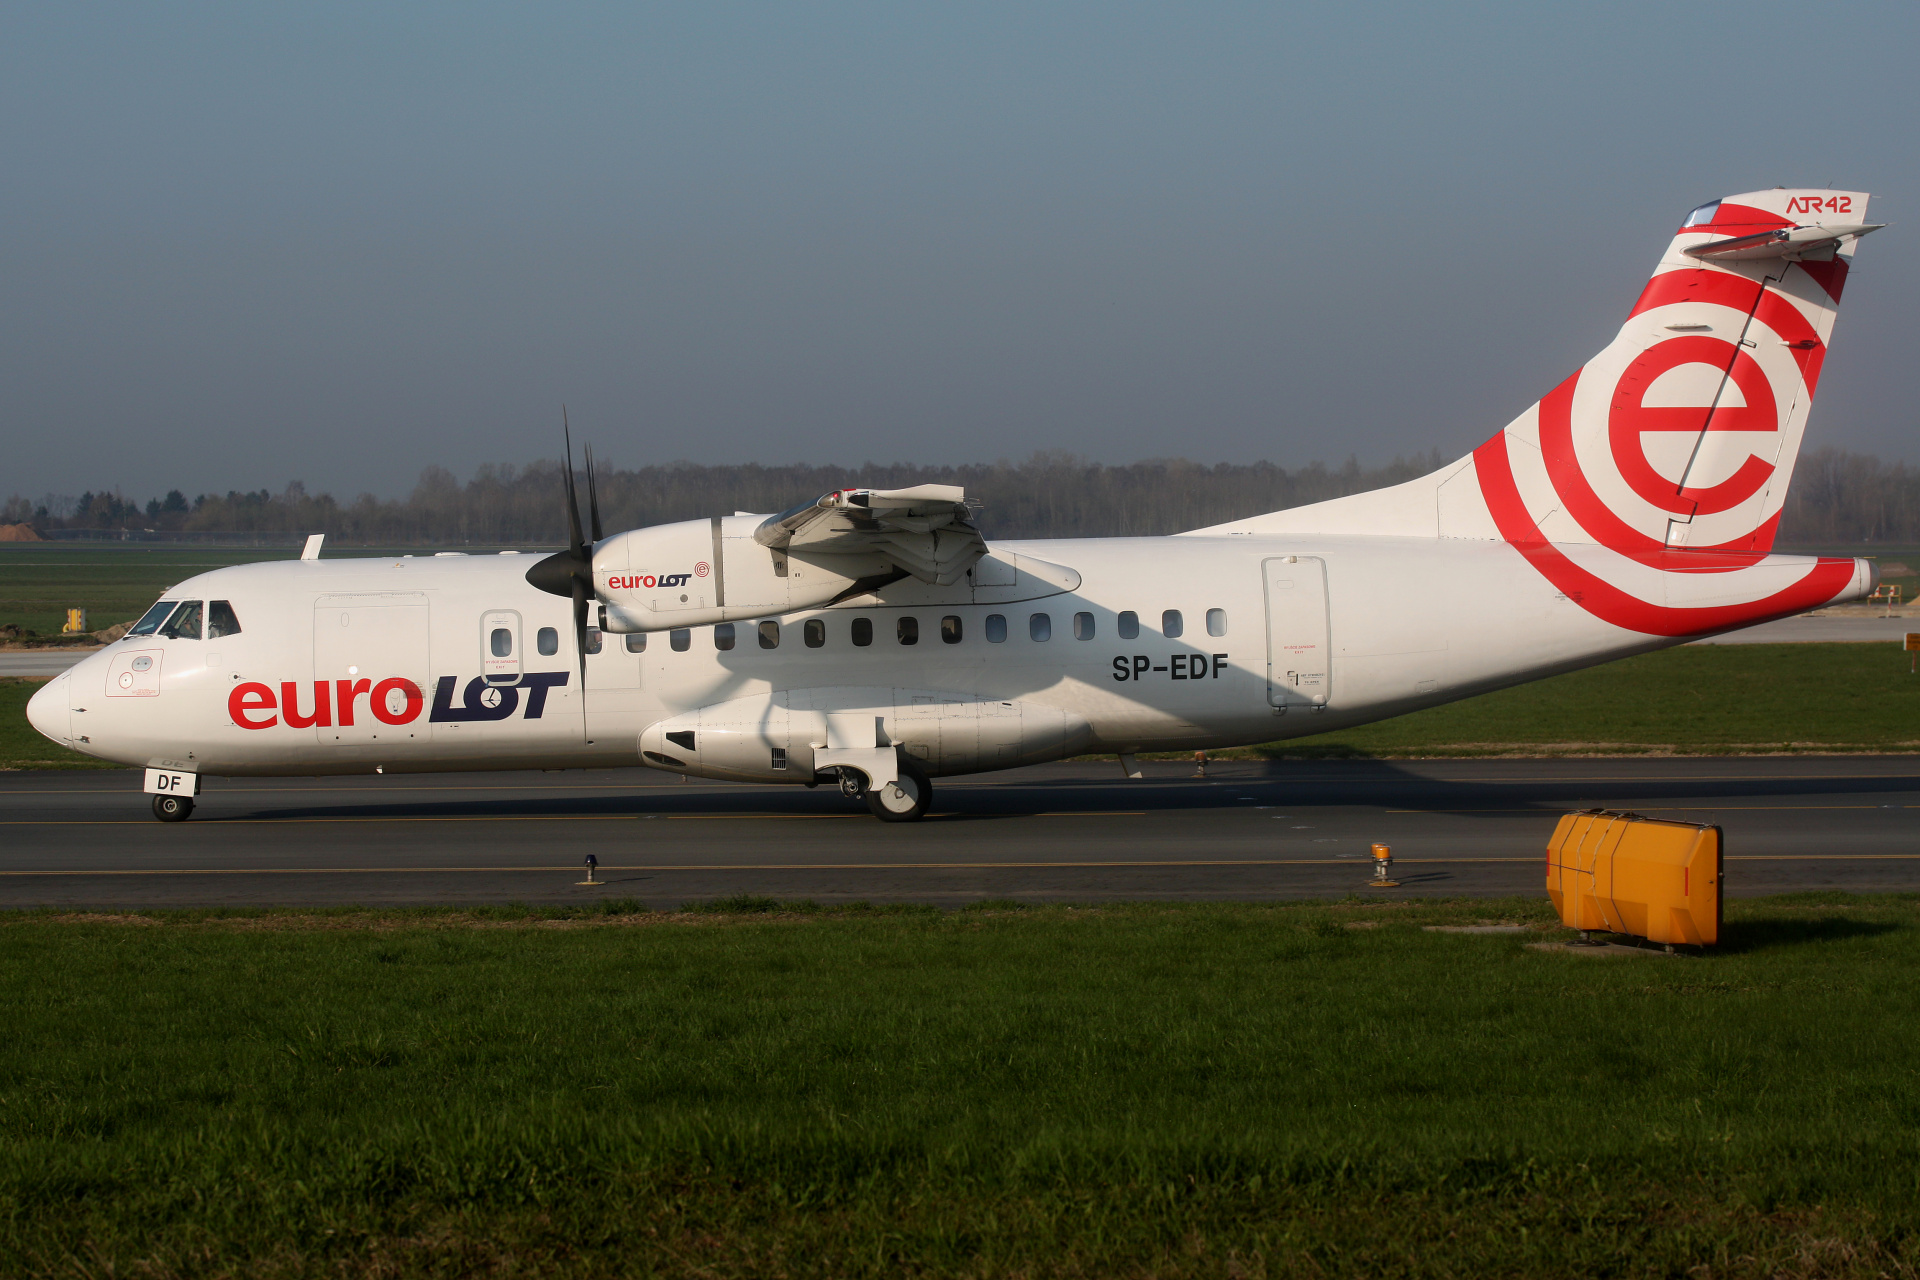 SP-EDF (Aircraft » EPWA Spotting » ATR 42 » EuroLOT)